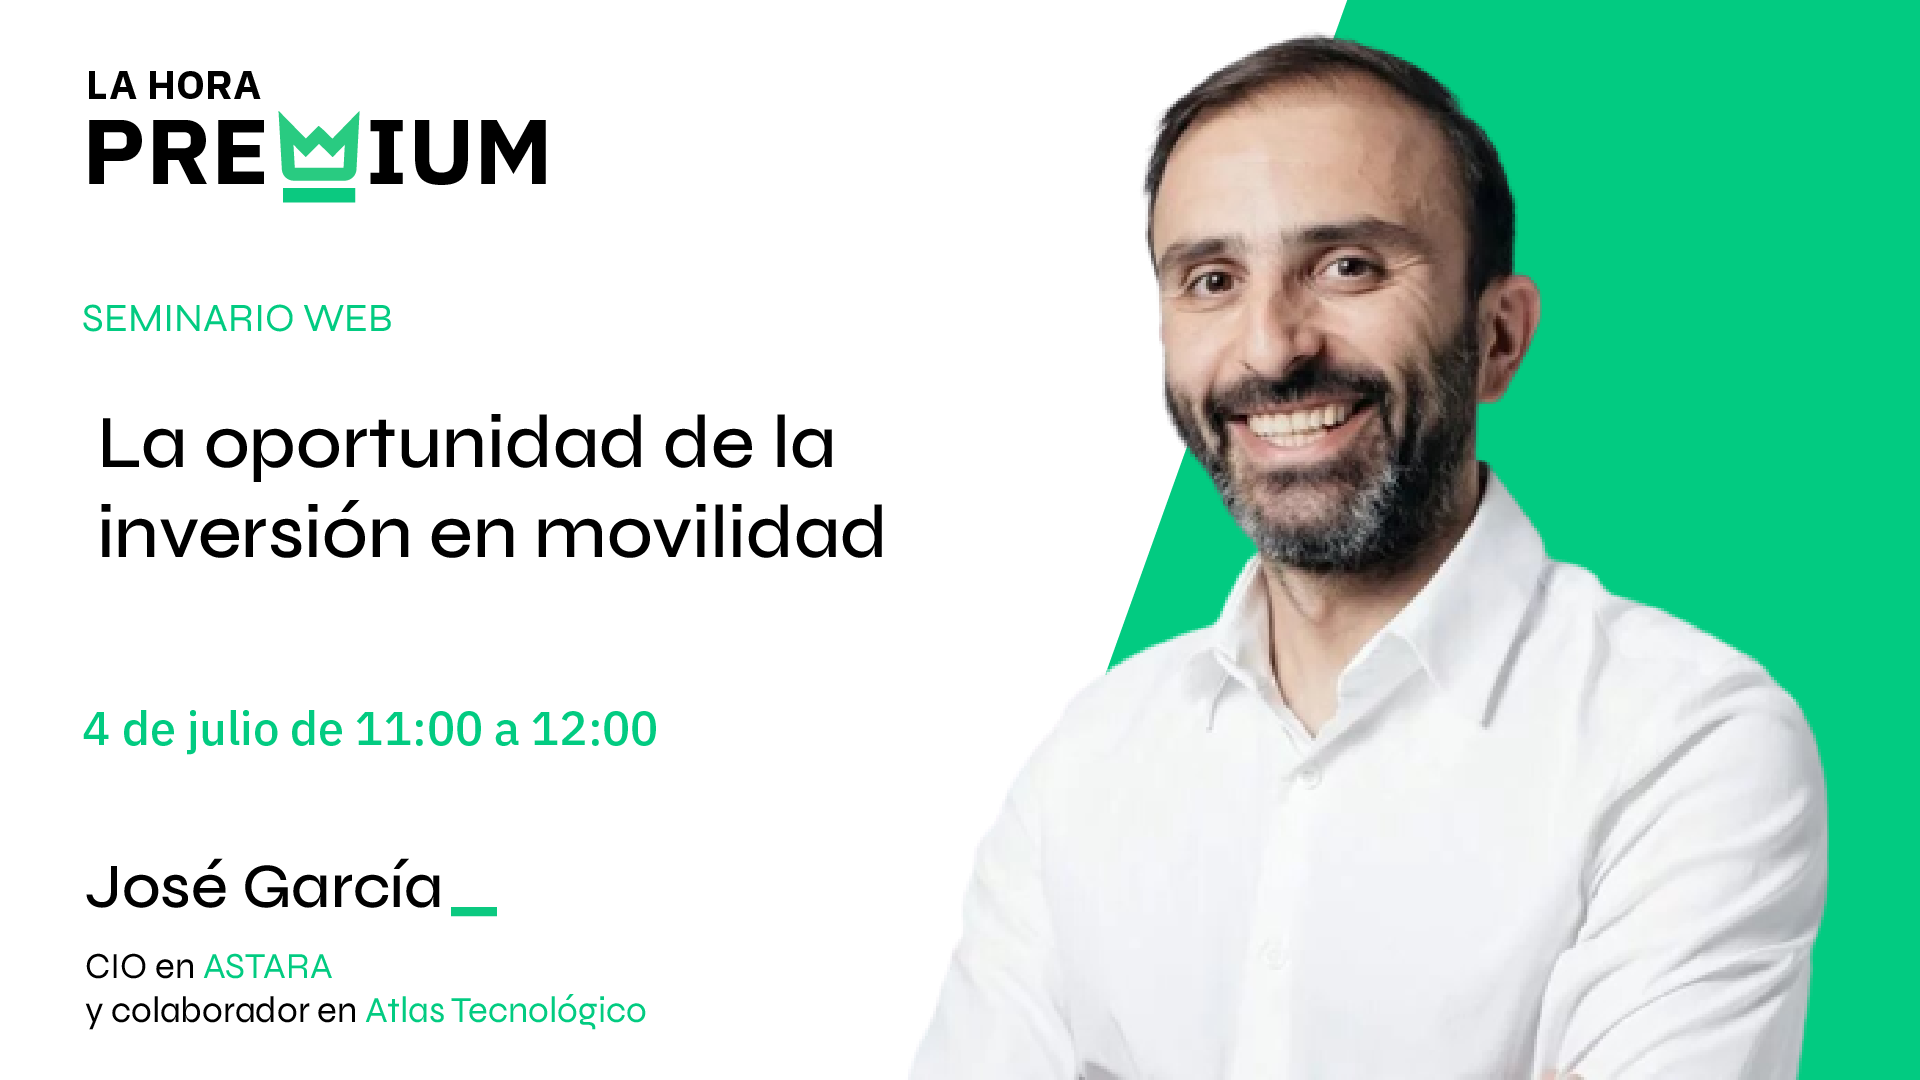 José García Pacheco hablará sobre la oportunidad de la inversión en la movilidad en la Hora Premium